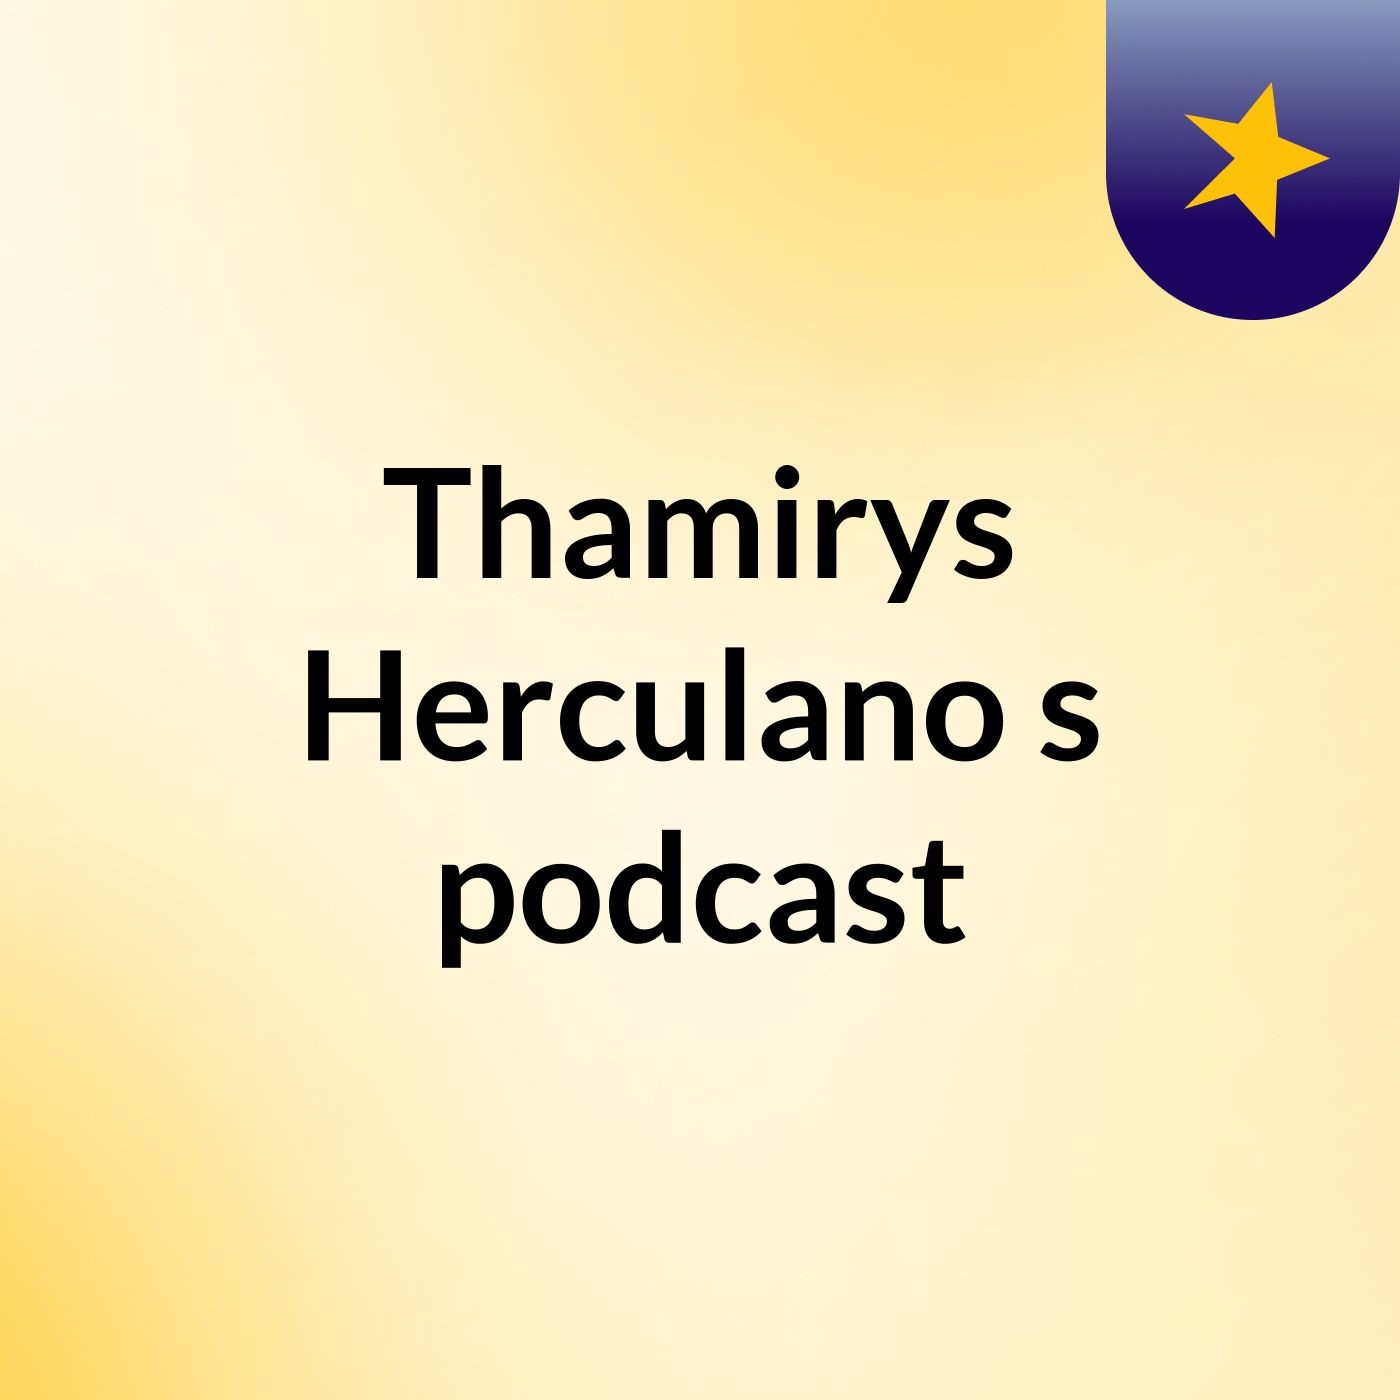 Thamirys Herculano's podcast